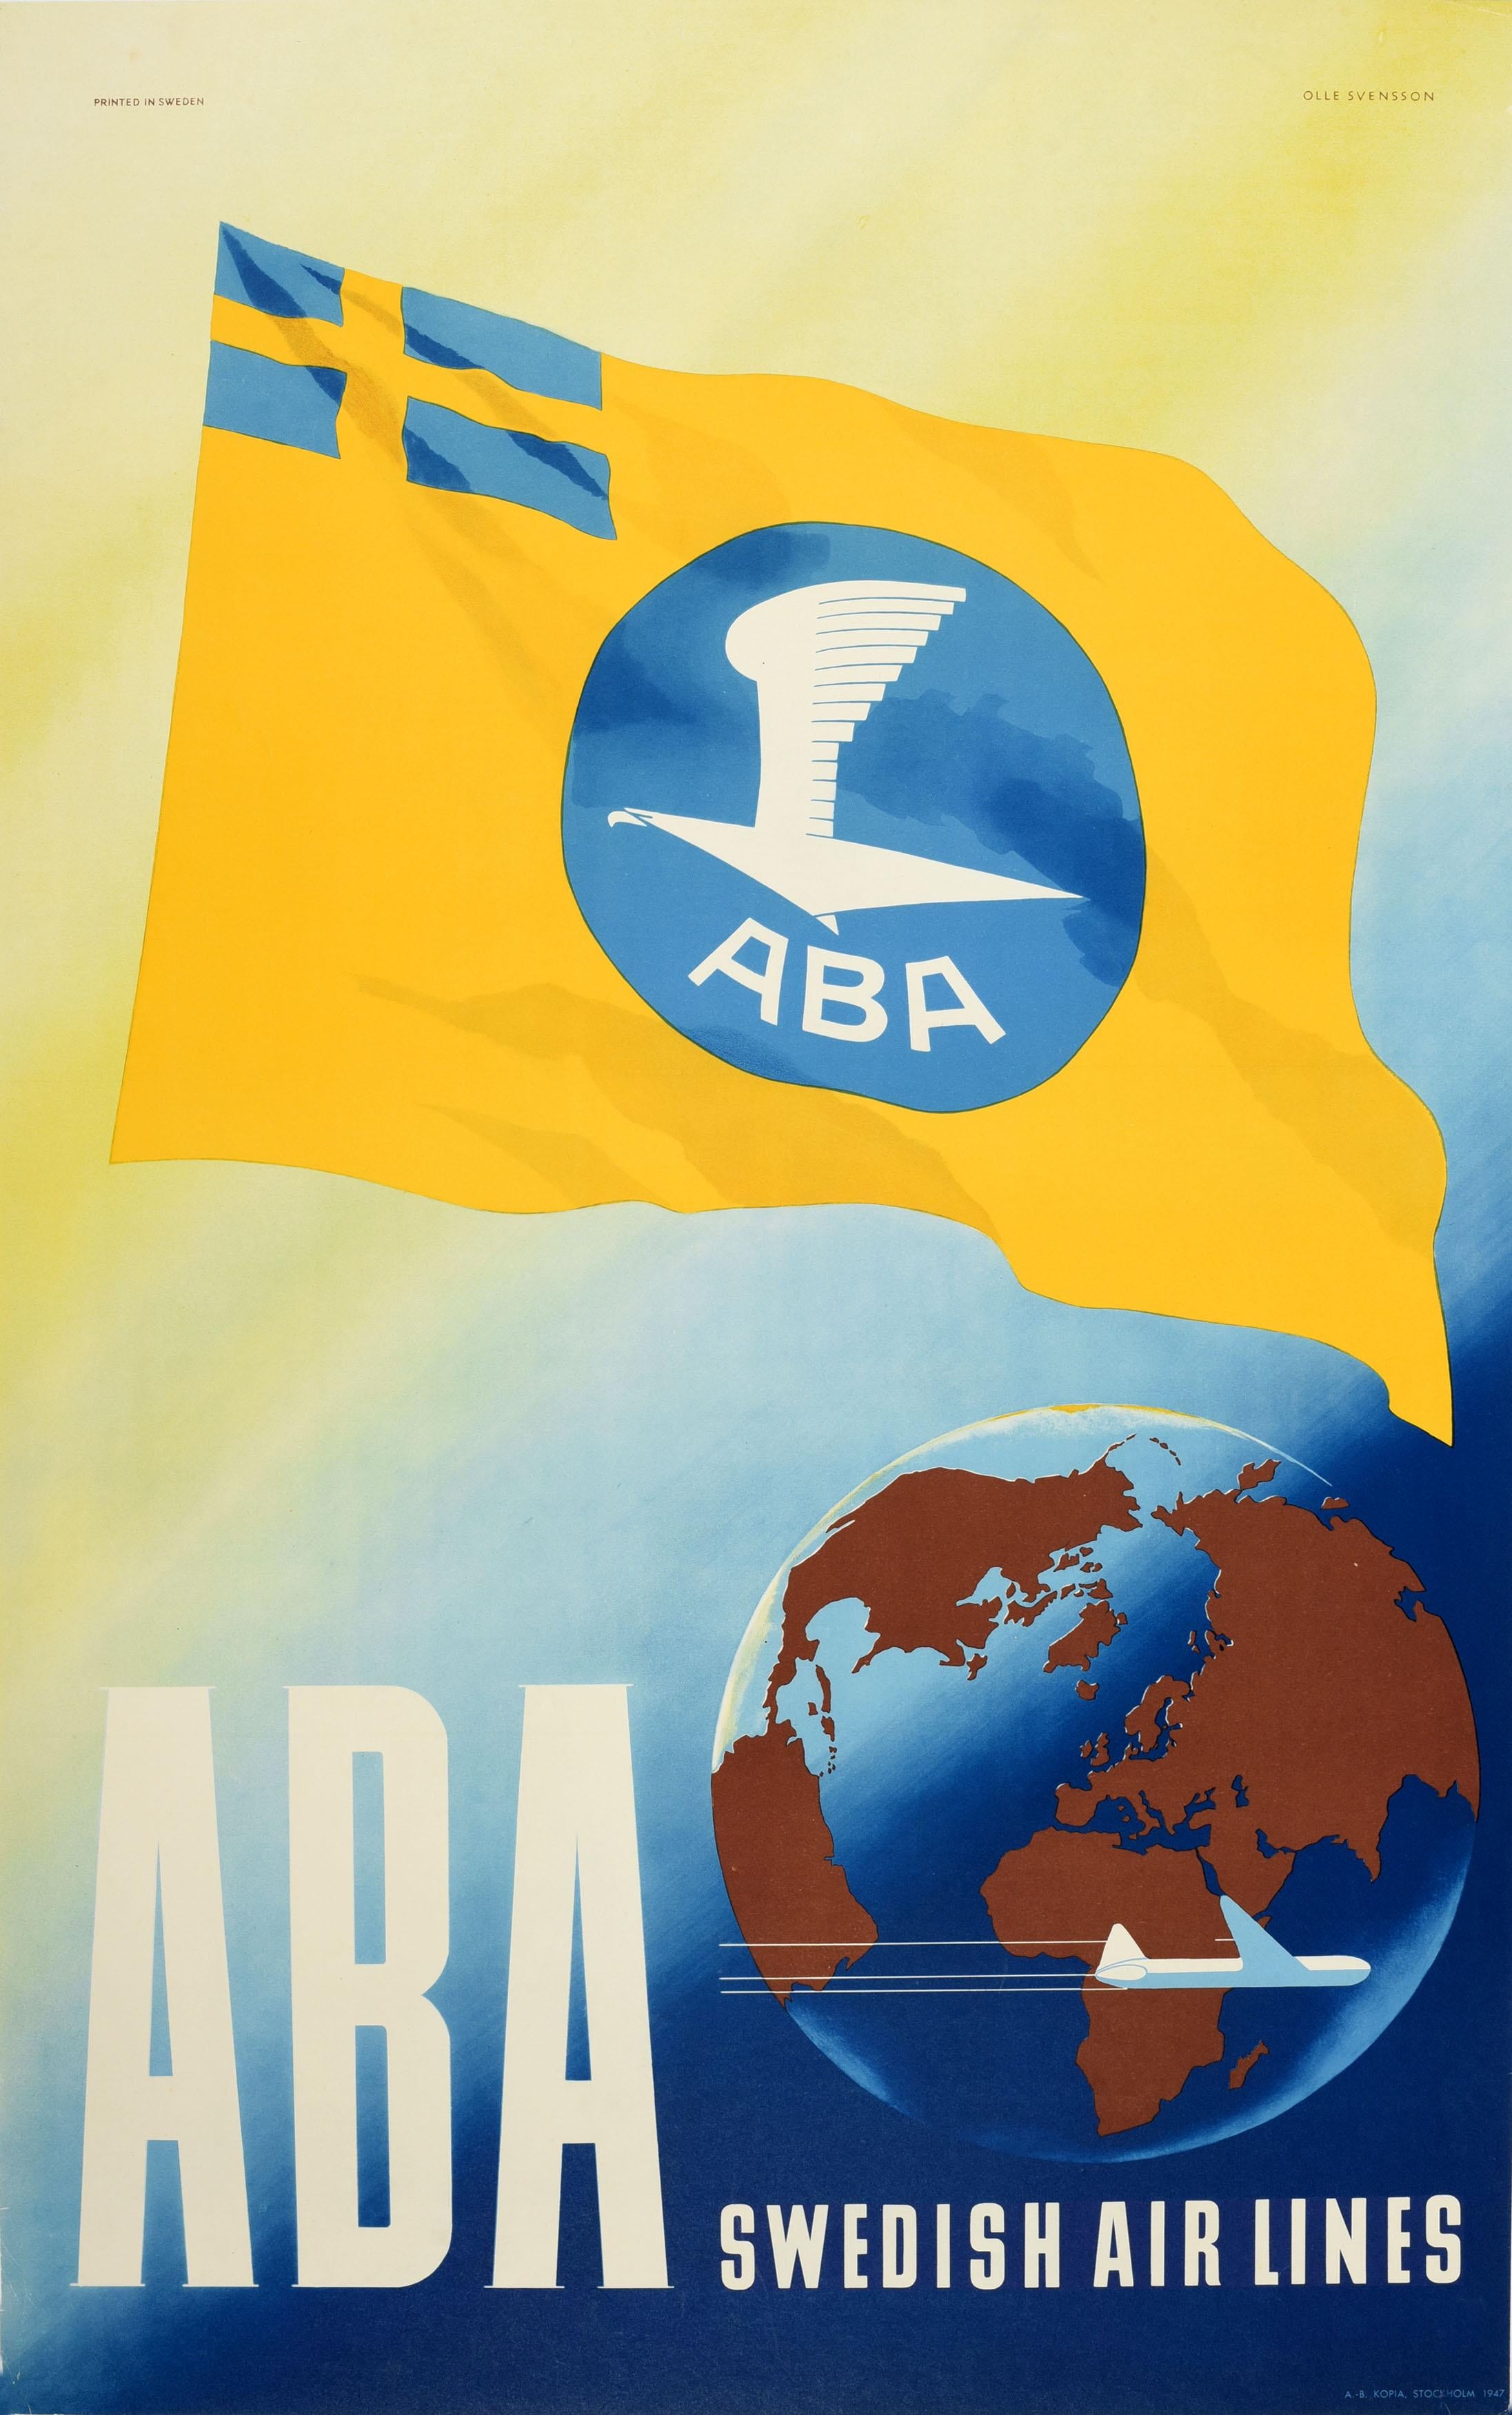 Original-Reisewerbeplakat für ABA Swedish Air Lines (1924-1950; heute Teil der SAS Group / Scandinavian Airlines System). Großartiges Design, das das schwedische blau-gelbe Kreuz mit dem ABA-Logo auf einer gelben Flagge zeigt, die über einer